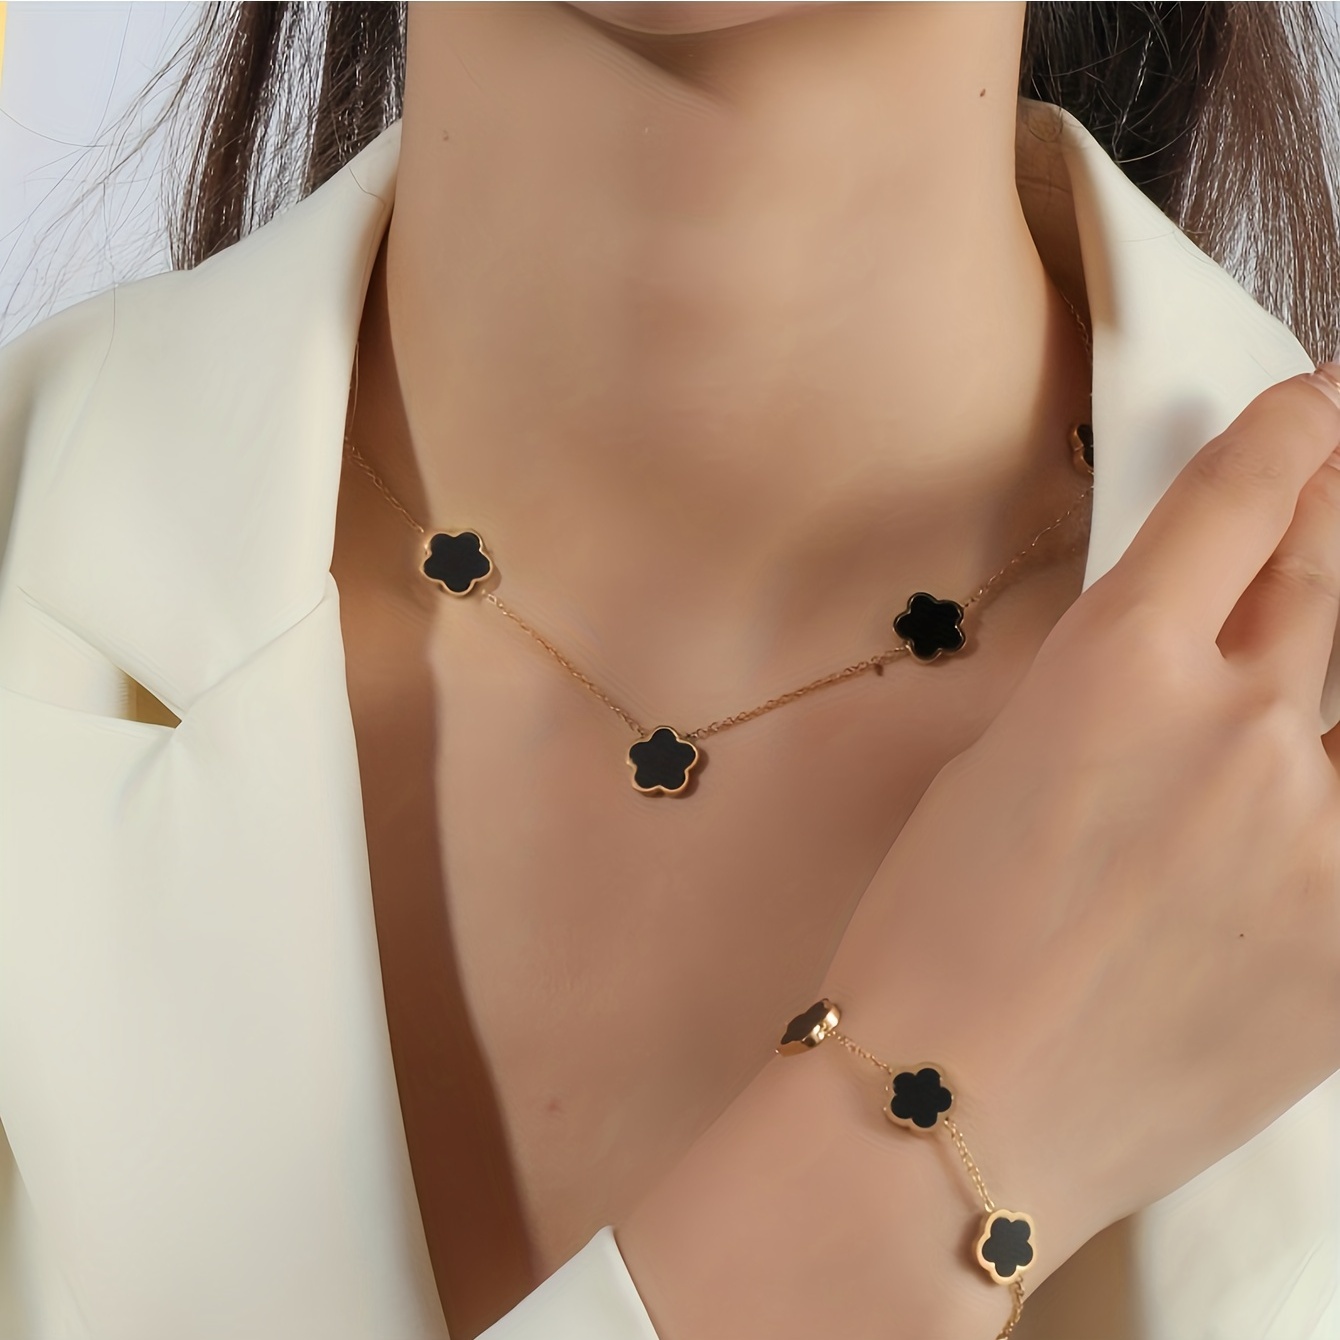 18k Gold Five-Flower Bracelet with Four-Leaf Clover Design for Women's  Fashion